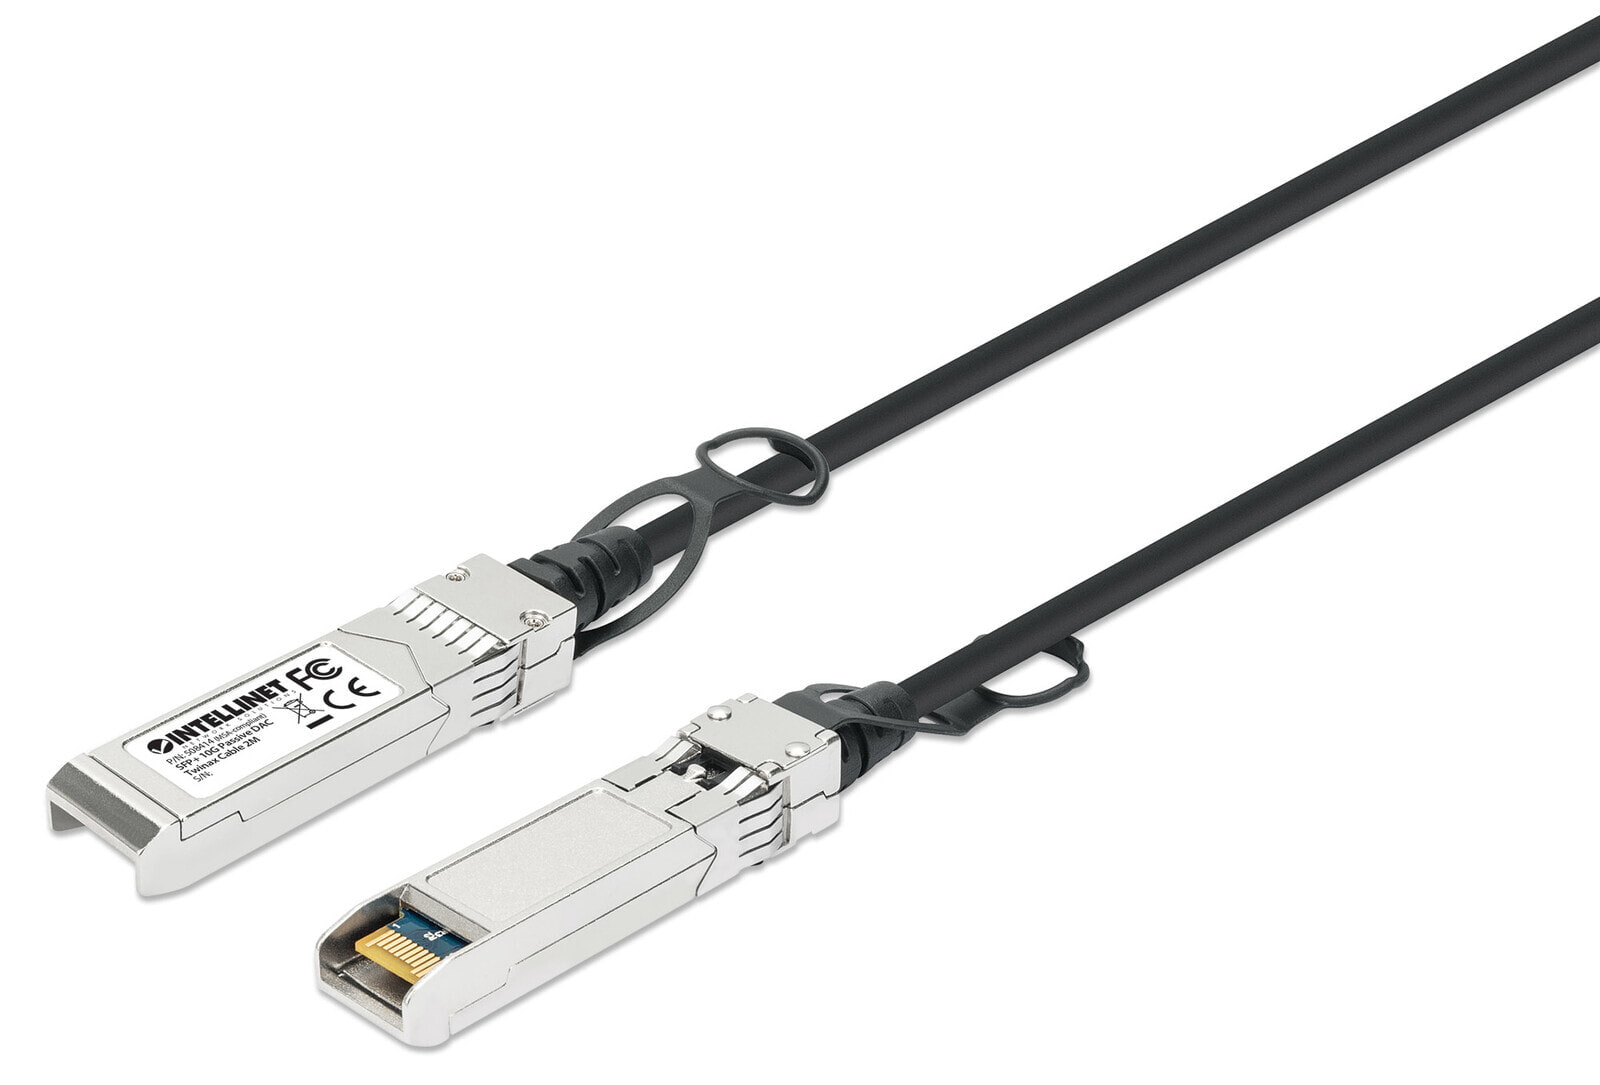 Intellinet 508414 волоконно-оптический кабель 2 m SFP+ Черный, Серебристый